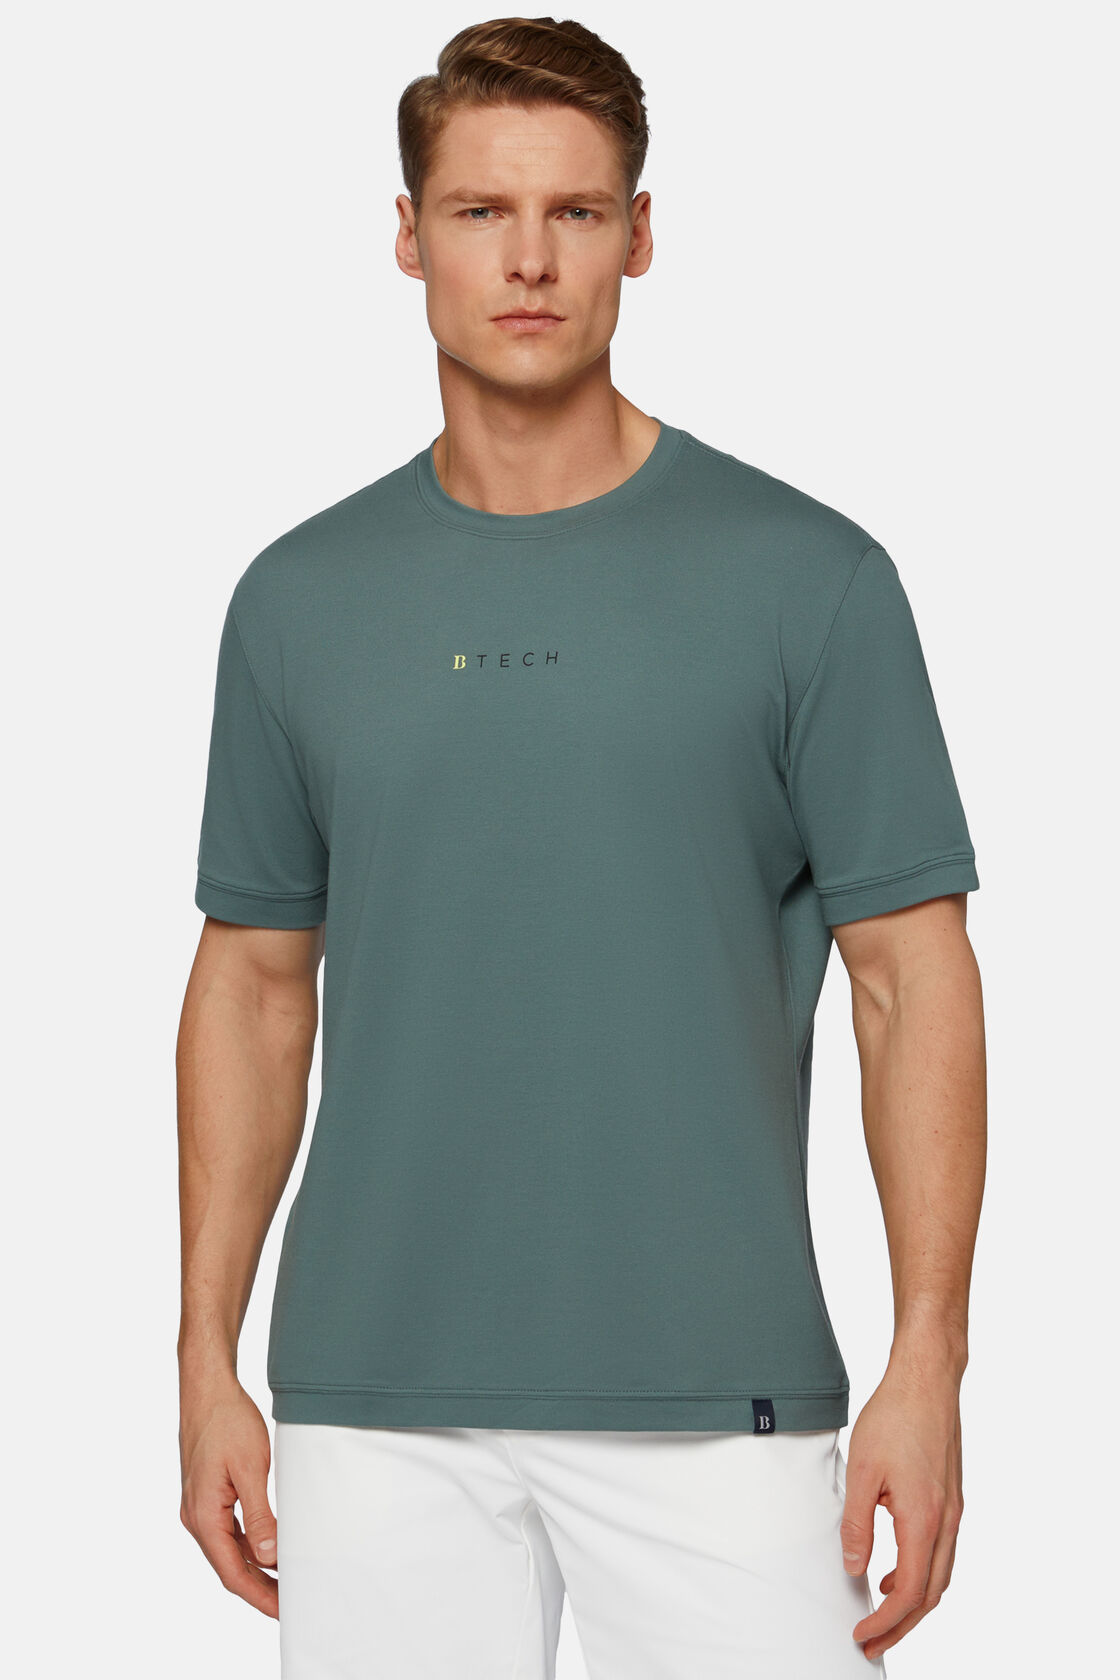 Πικέ μπλουζάκι πόλο υψηλών επιδόσεων, Green, hi-res